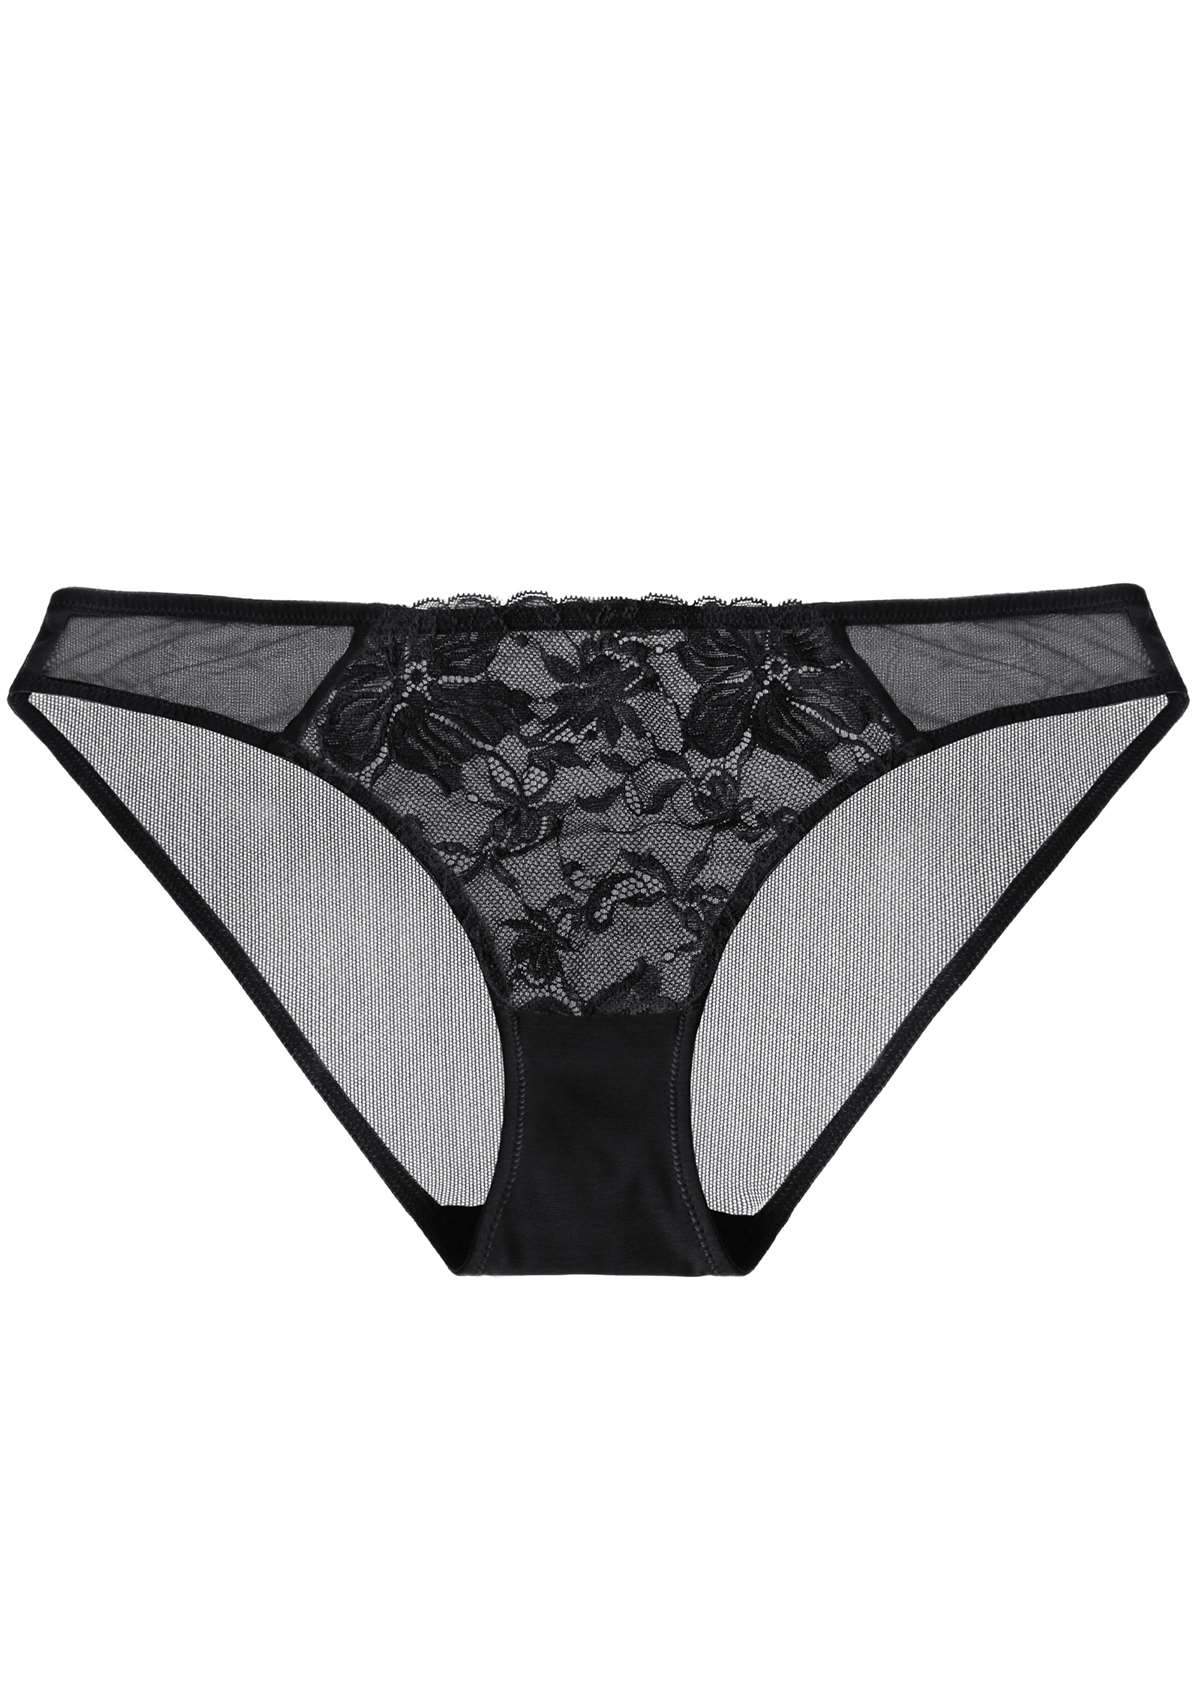 HSIA Pretty In Petals Sexy Lightweight Breathable Lace Underwear  - L / Bikini / Black